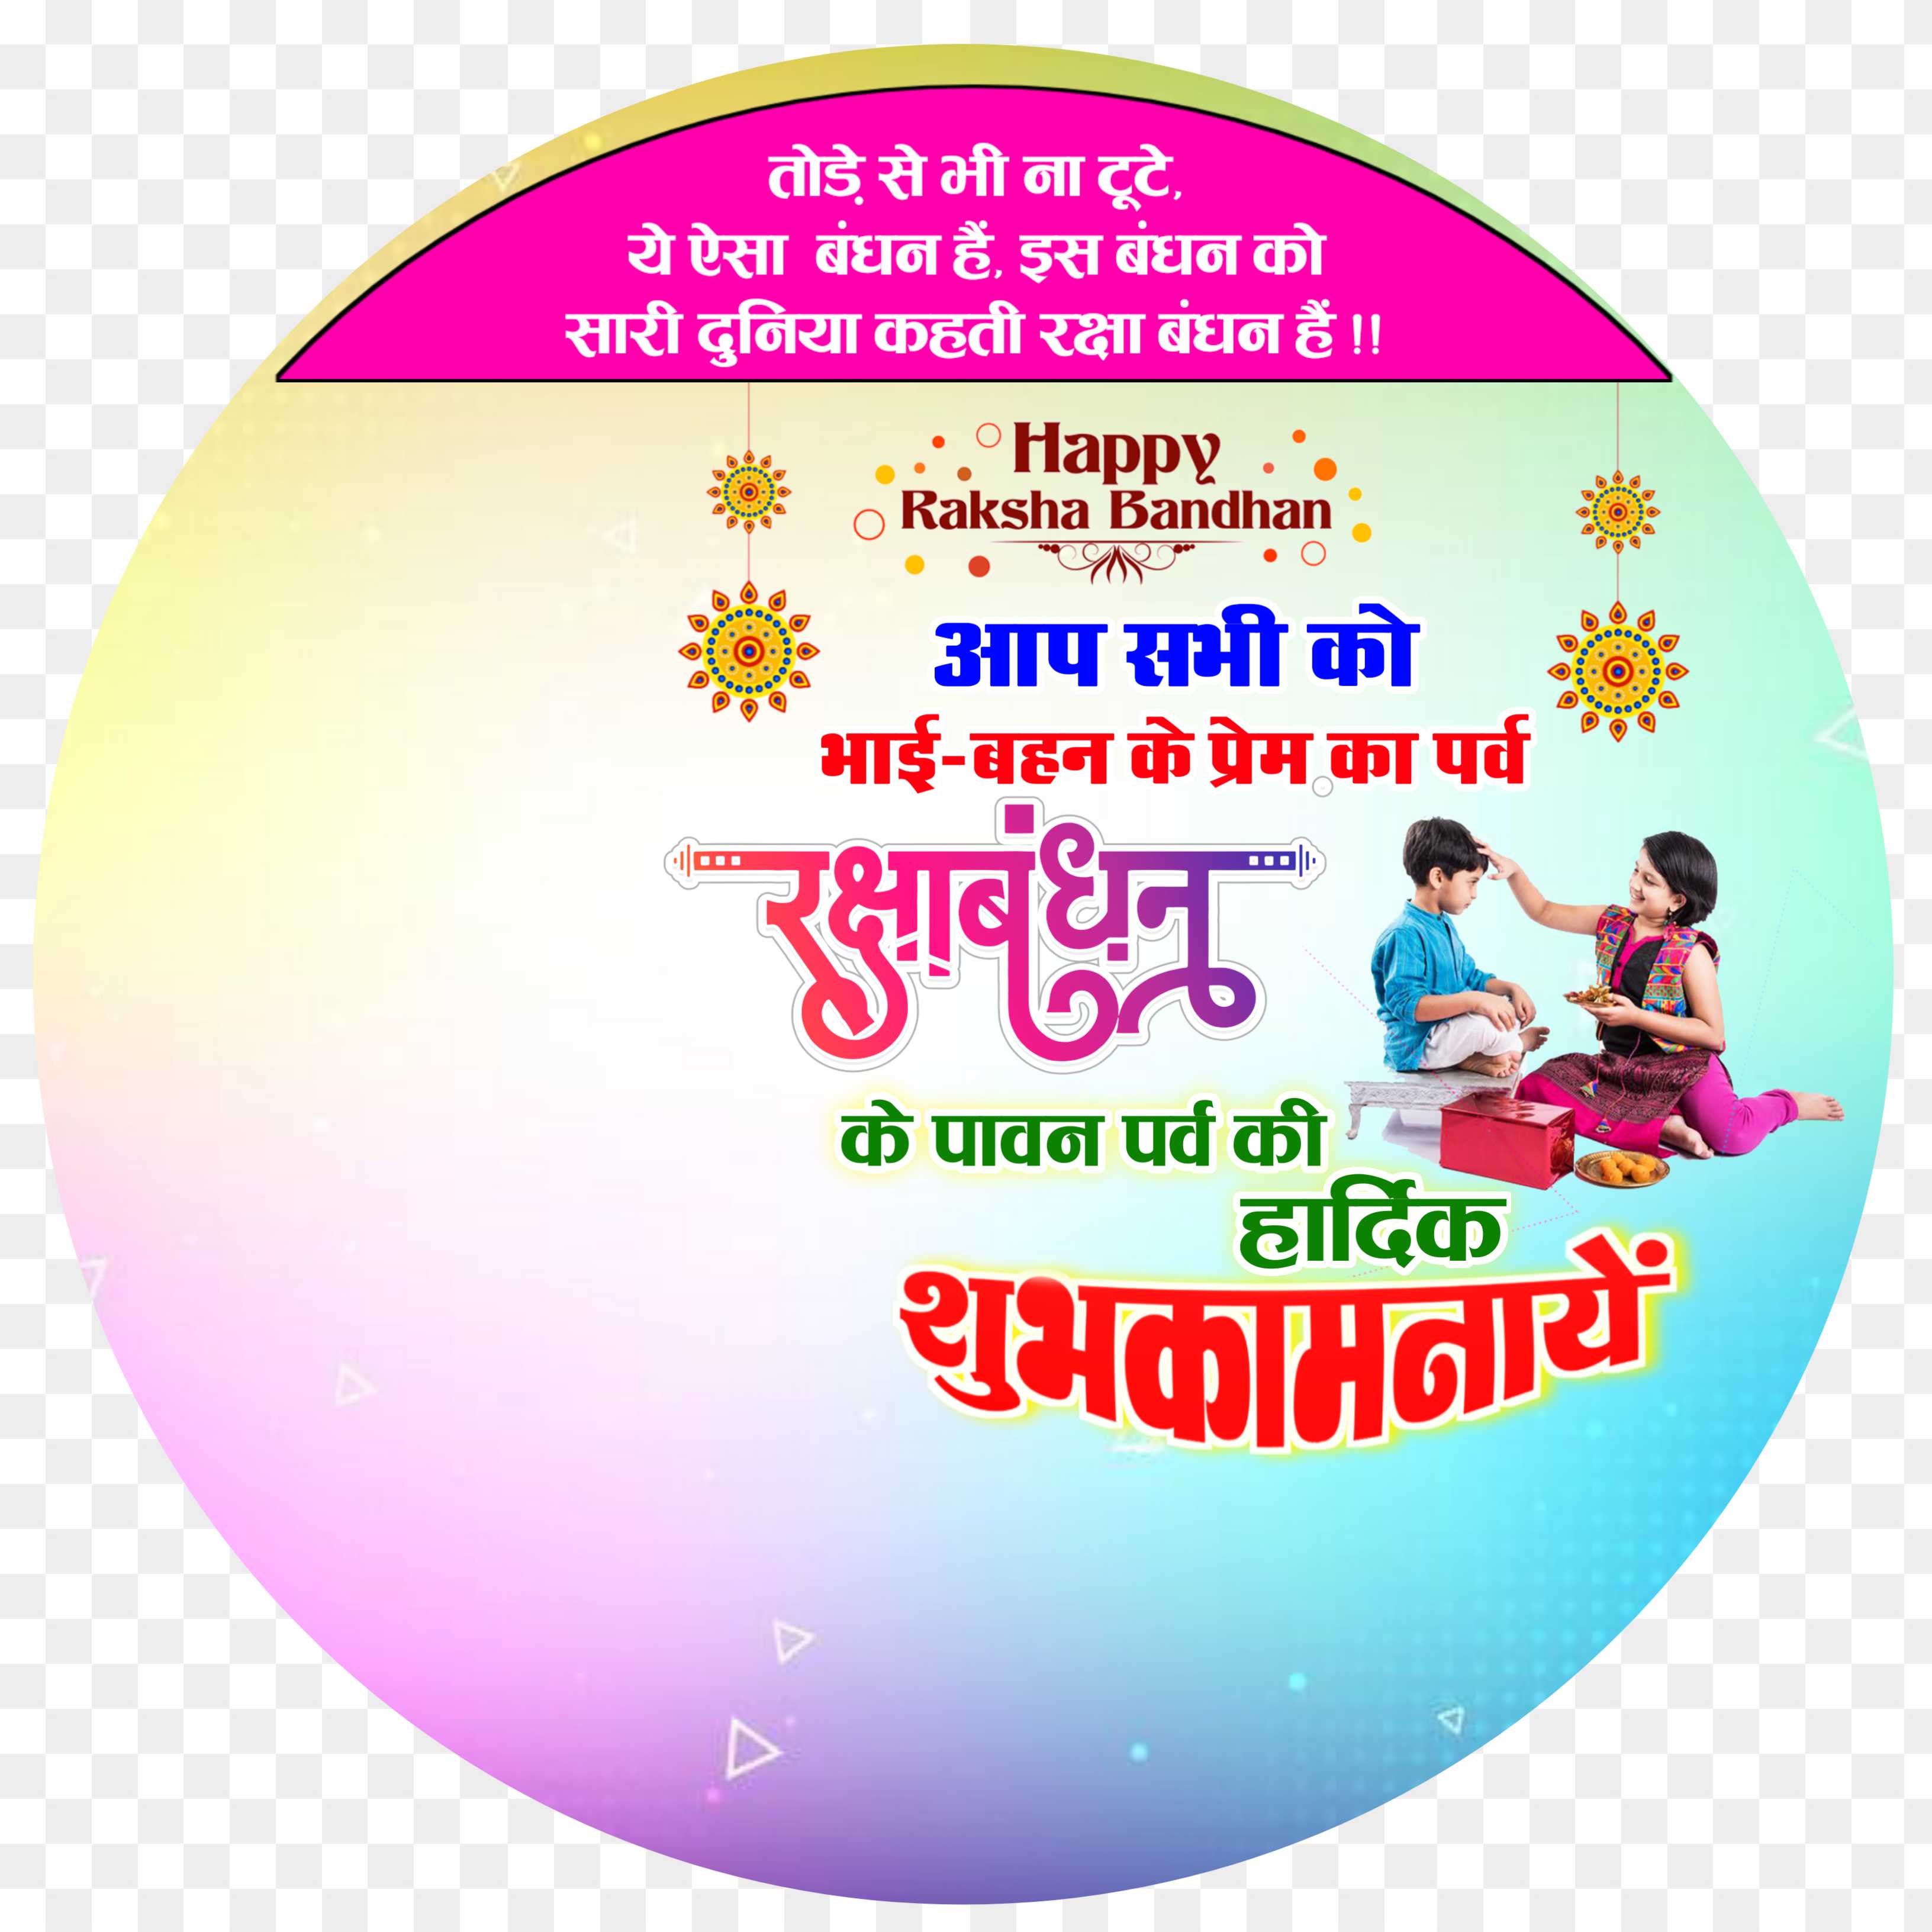 Raksha Bandhan dp logo png images 